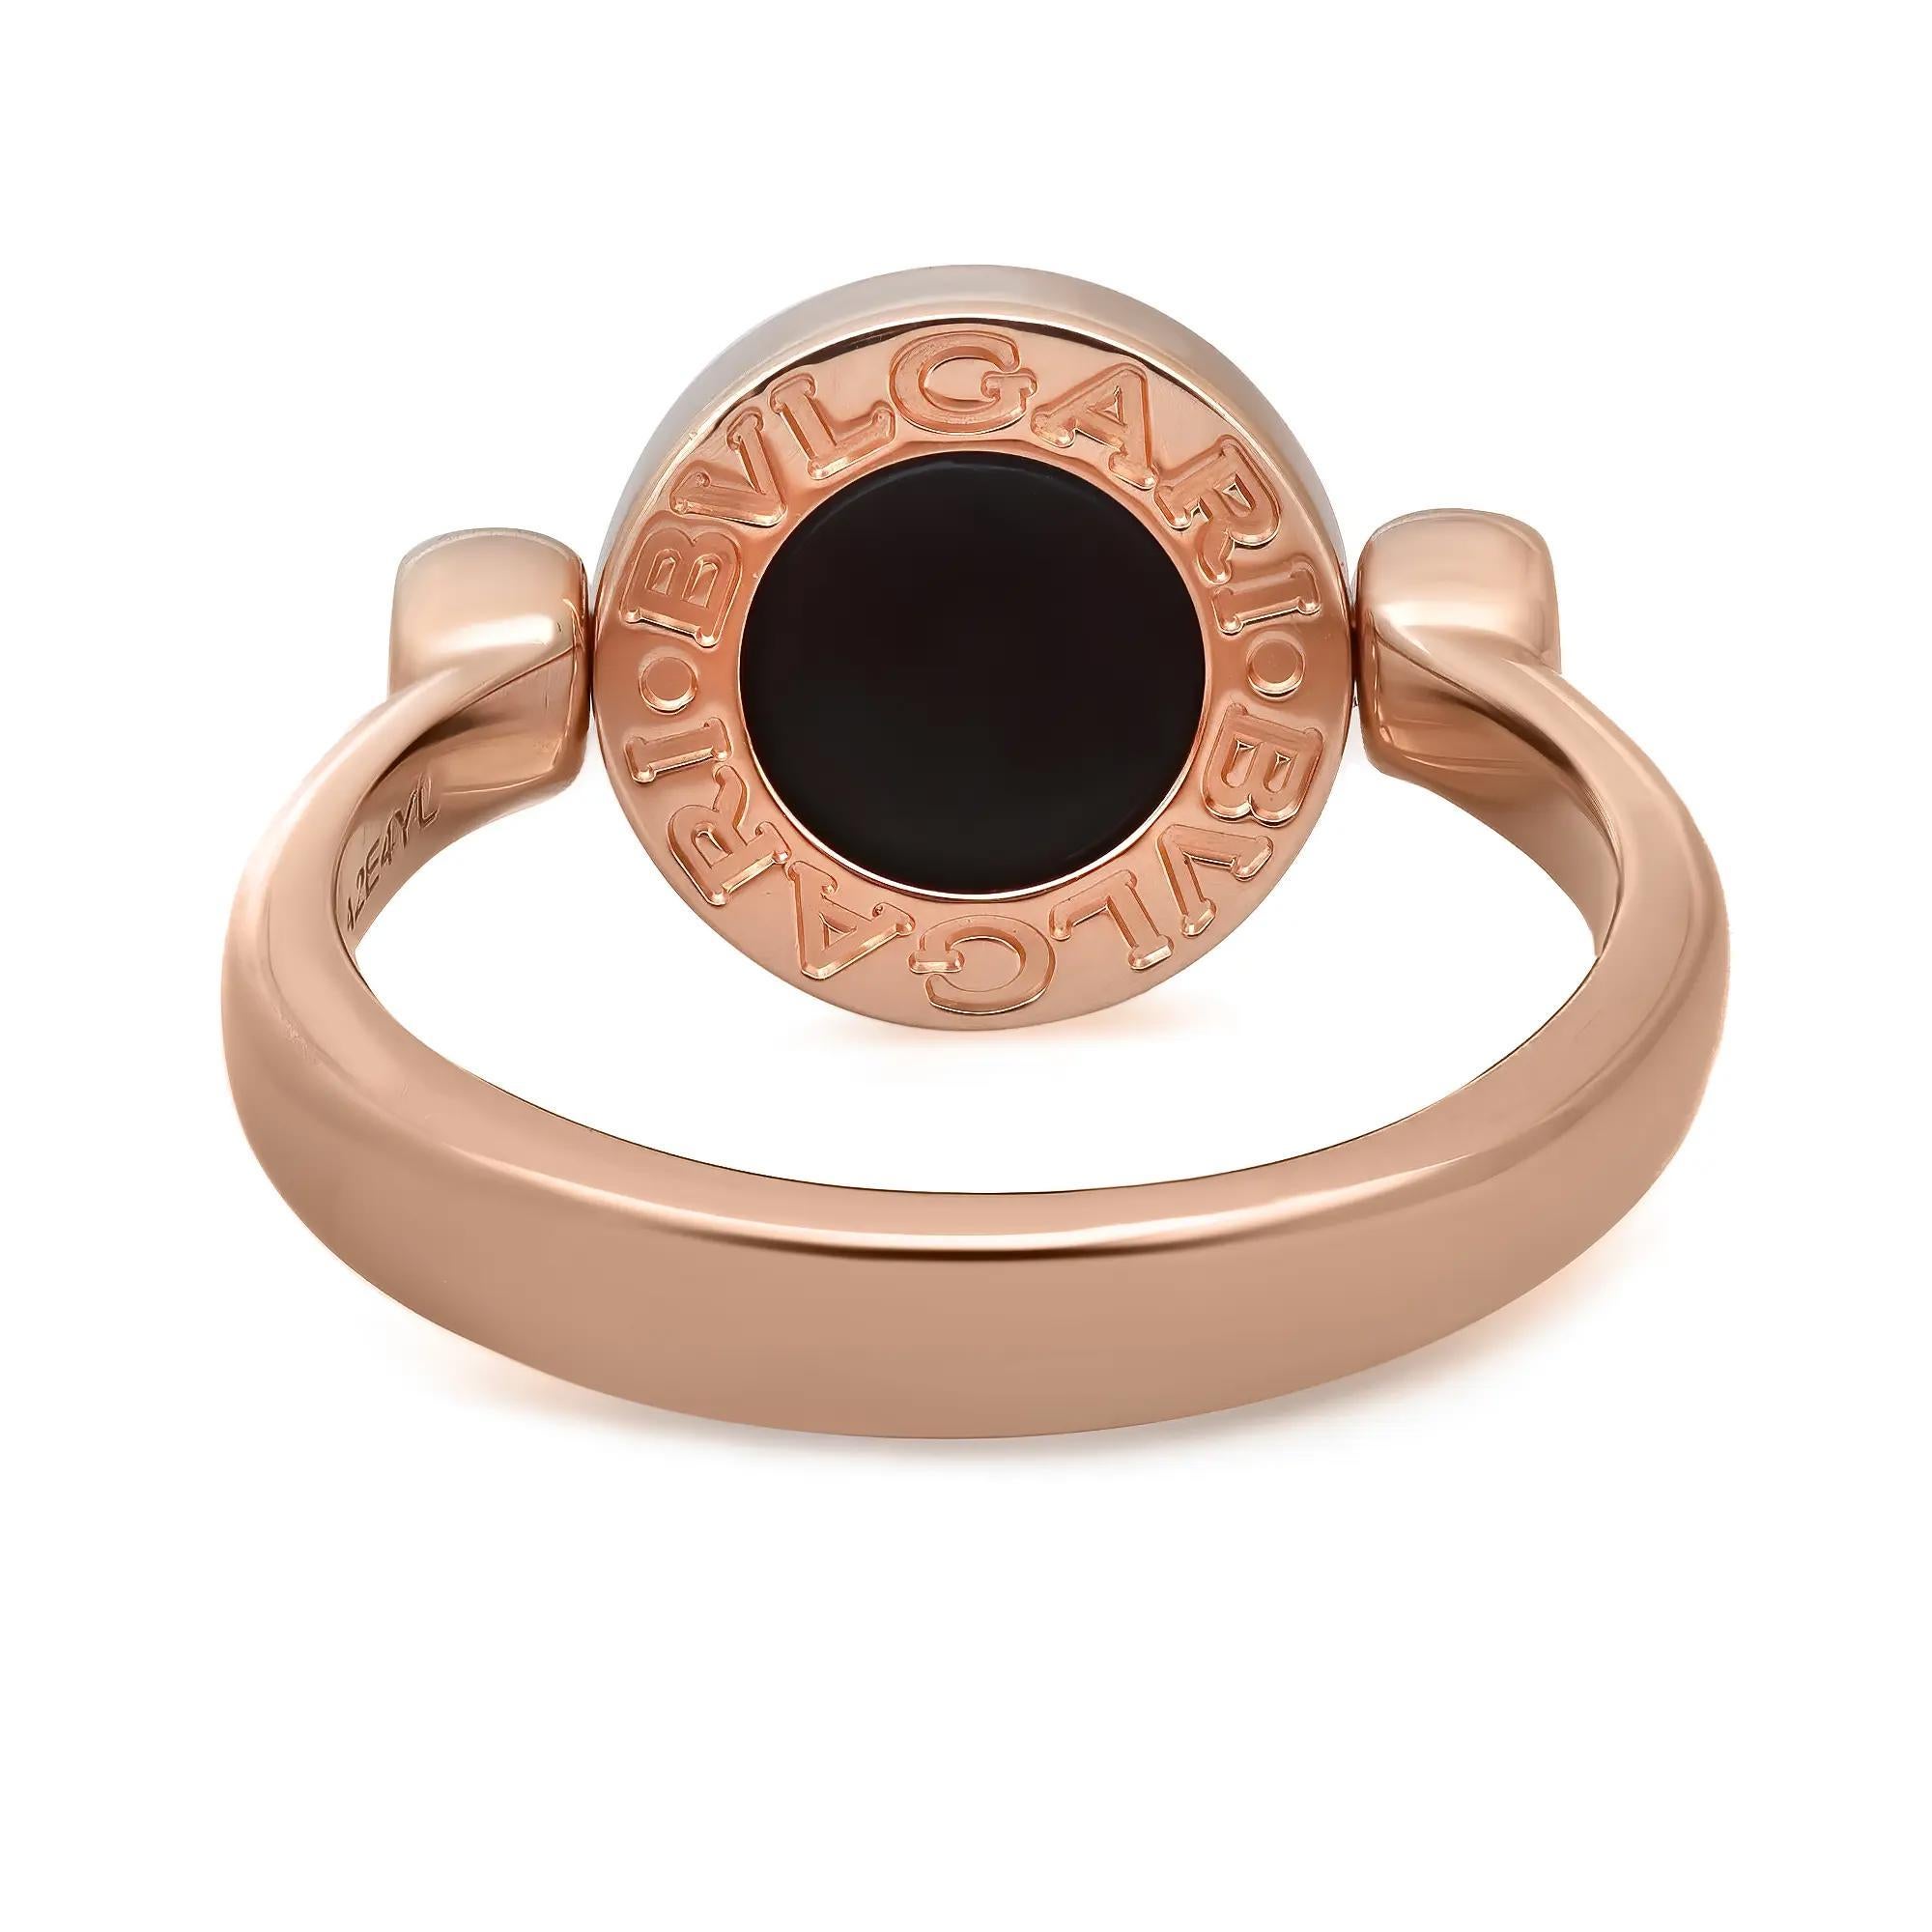 Der Ring BVLGARI BVLGARI ist eine elegante Verschmelzung von Kultur und Moderne. Er ist ein spritziges, zeitgenössisches Statement von Klasse. Gefertigt aus glänzendem 18 Karat Roségold. Der Klappring umrahmt mehrfarbige Edelsteineinsätze wie